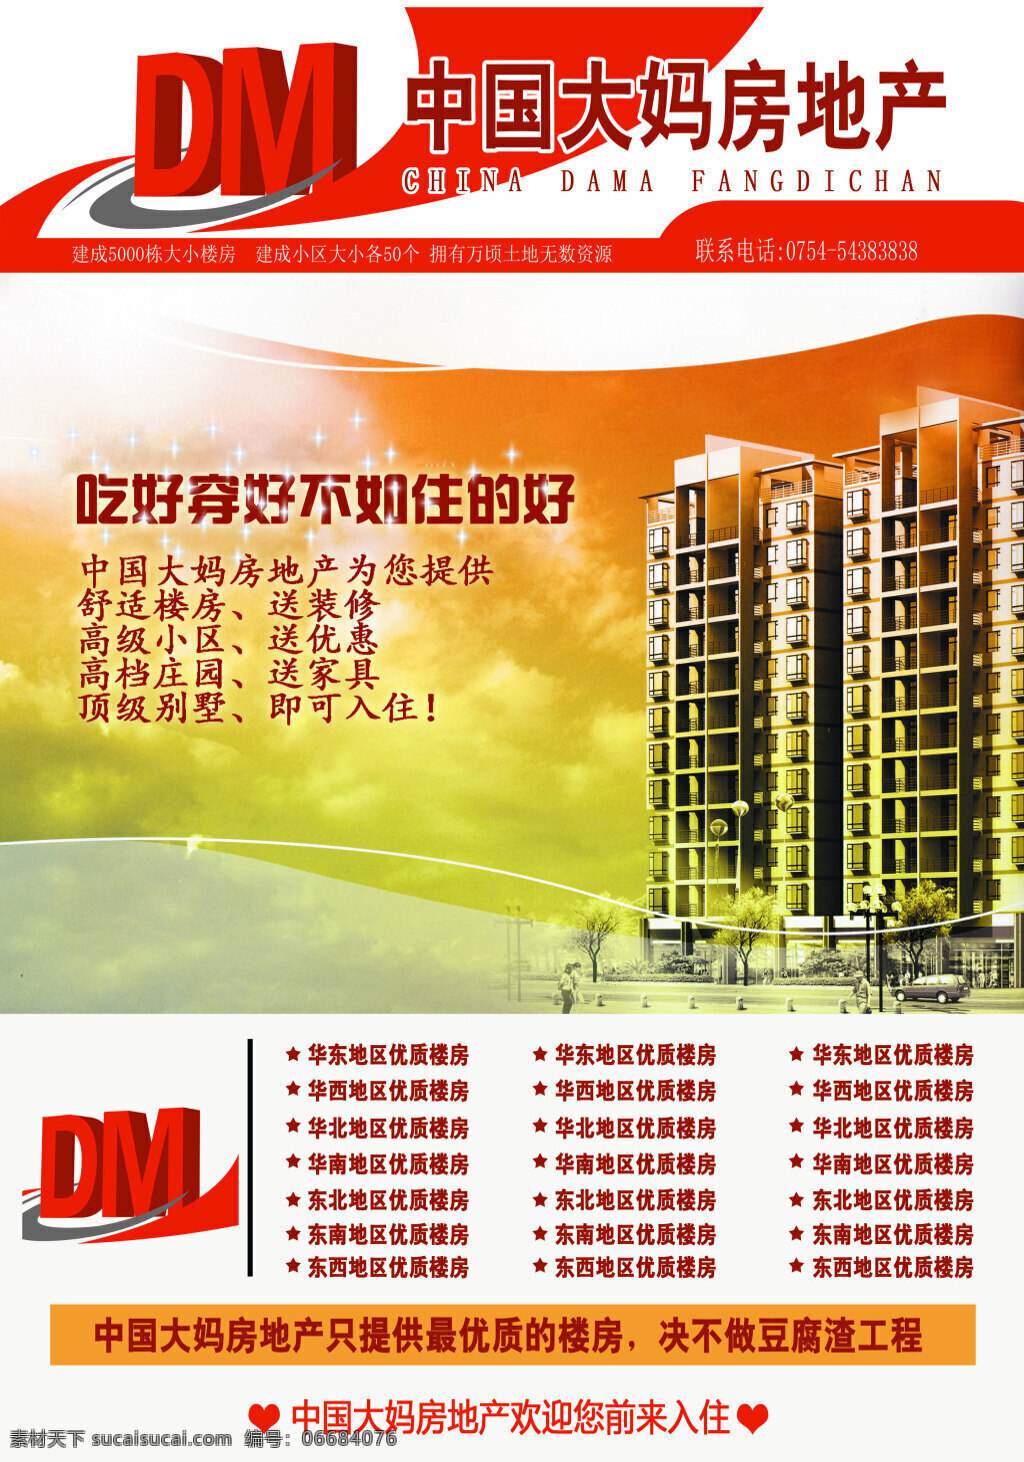 中国 大妈 房地产 海报 宣传海报 舒适楼房 高级小区 高档庄园 顶级别墅 优质的楼房 白色